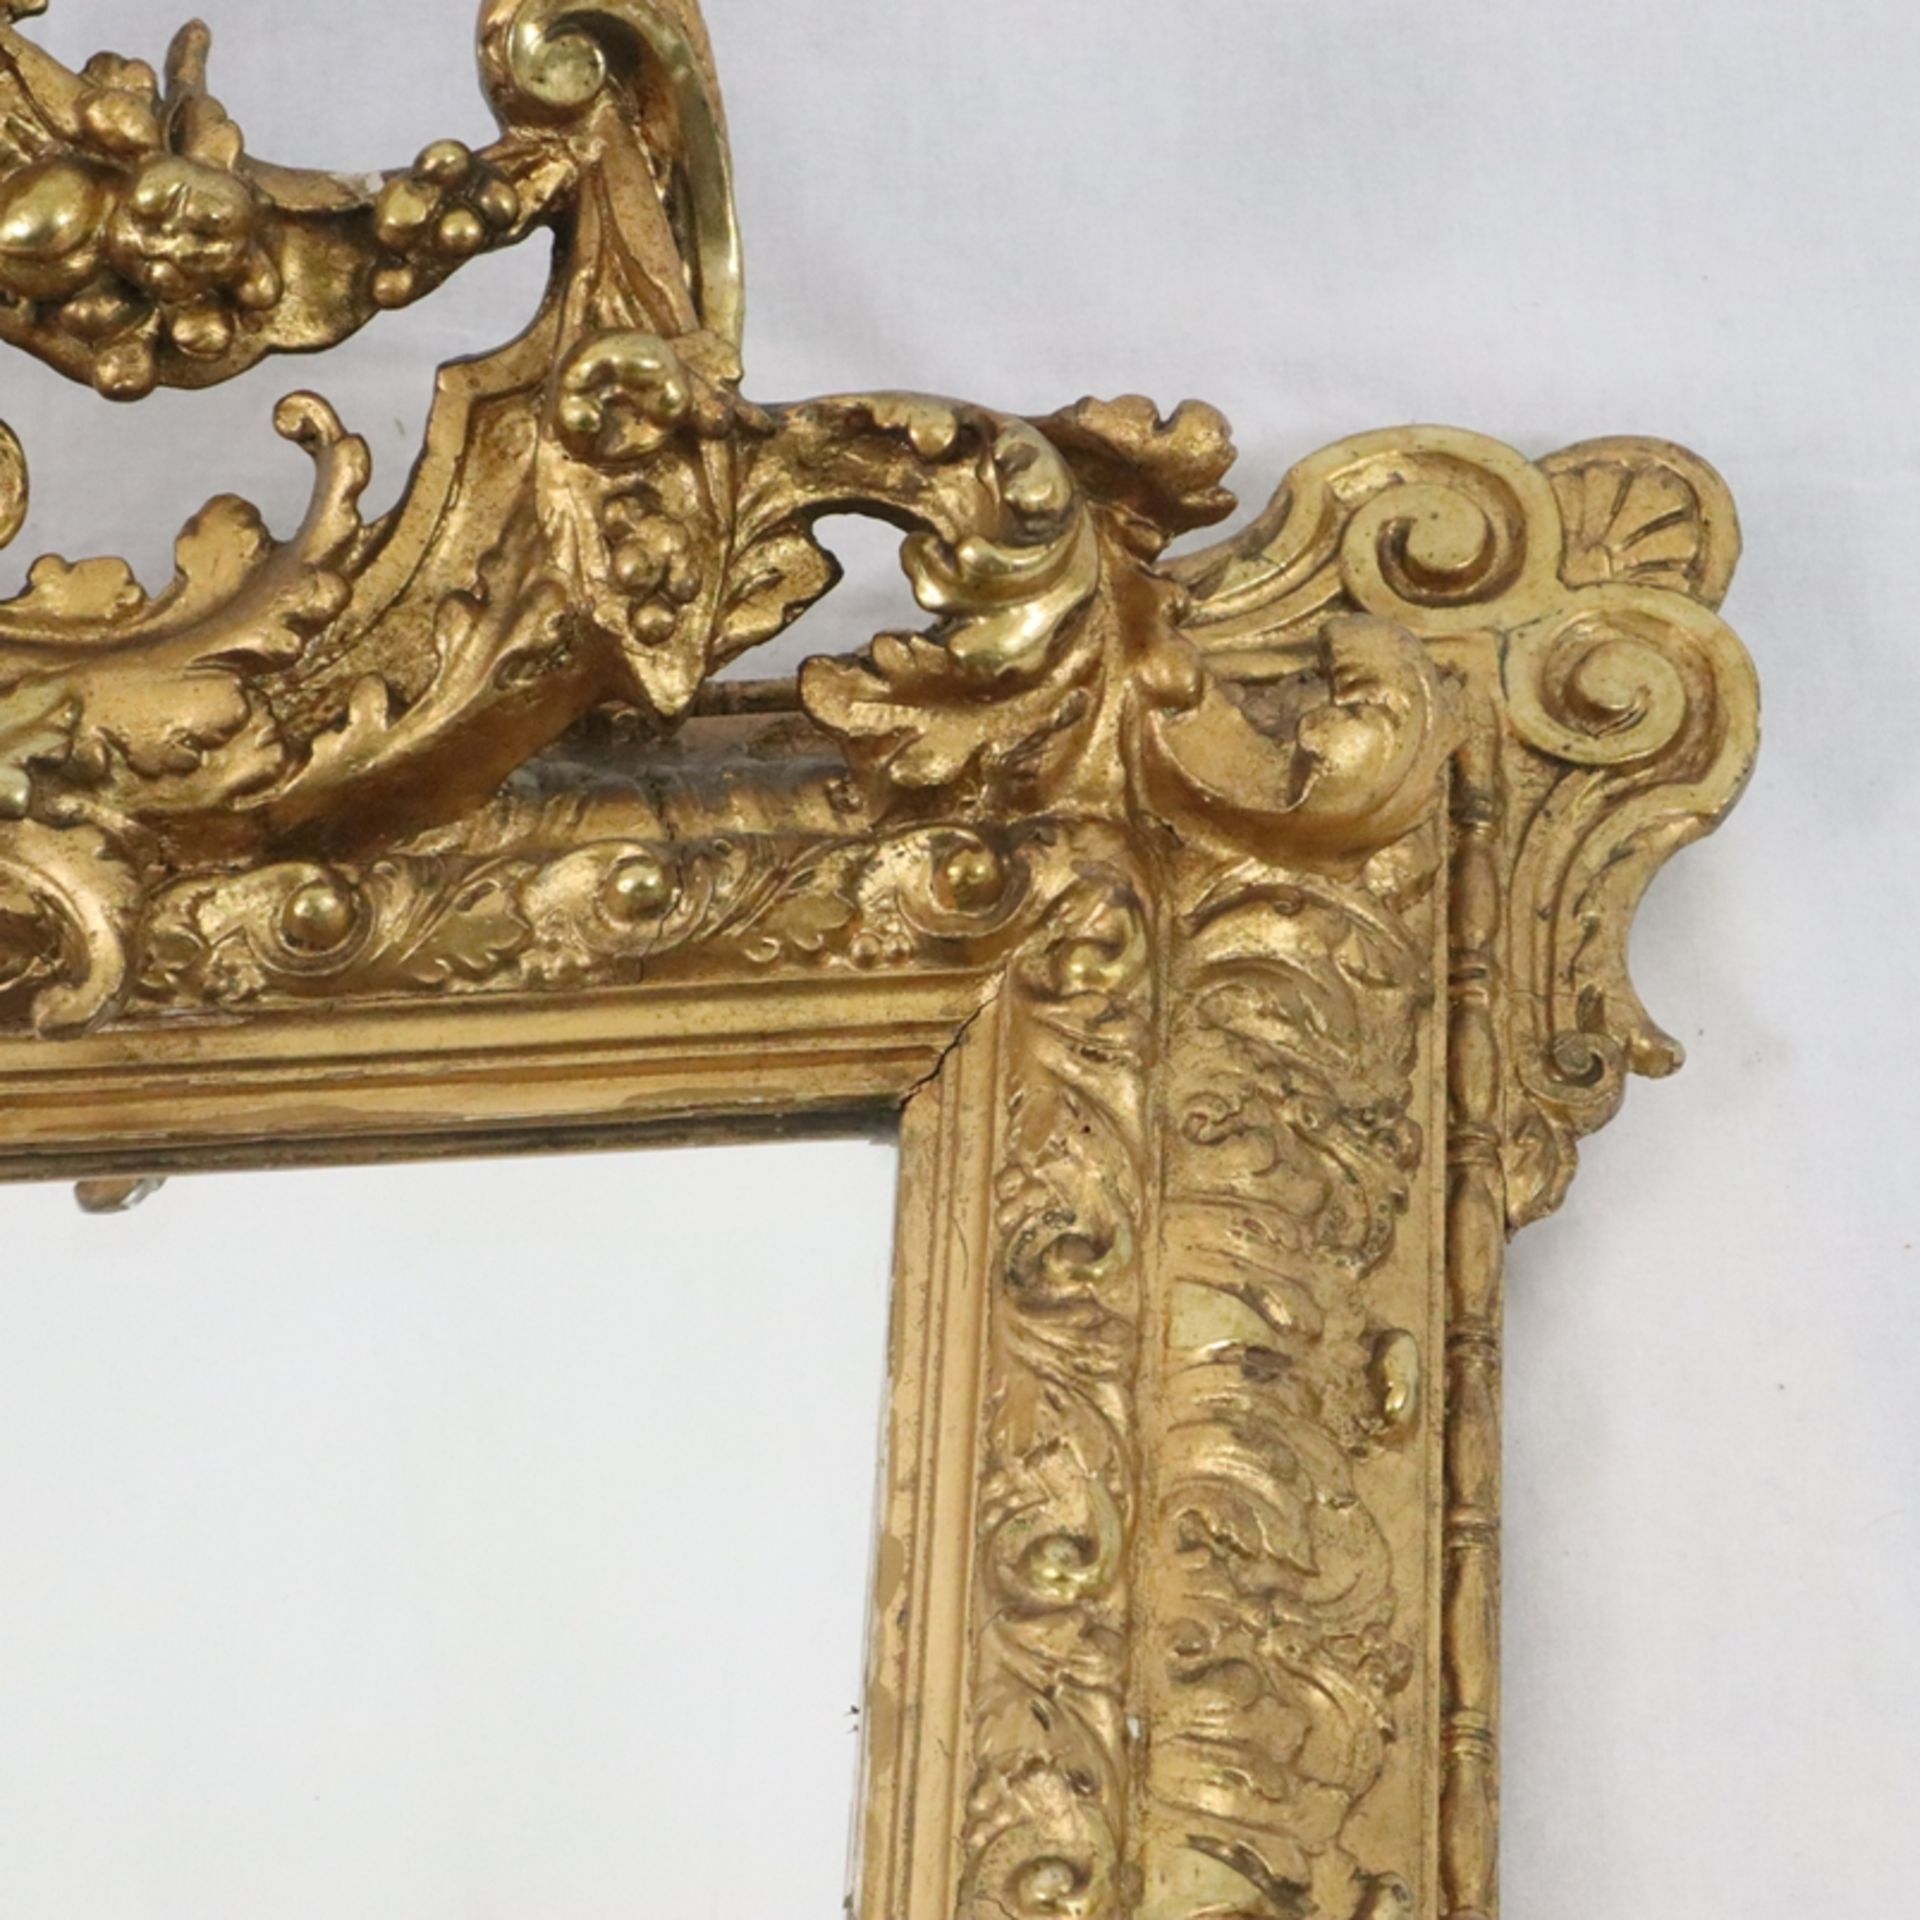 Wandspiegel - Trapezform, goldgefasster Stuckrahmen mit reichem Reliefdekor, Vasenbekrönung mit dur - Bild 3 aus 8